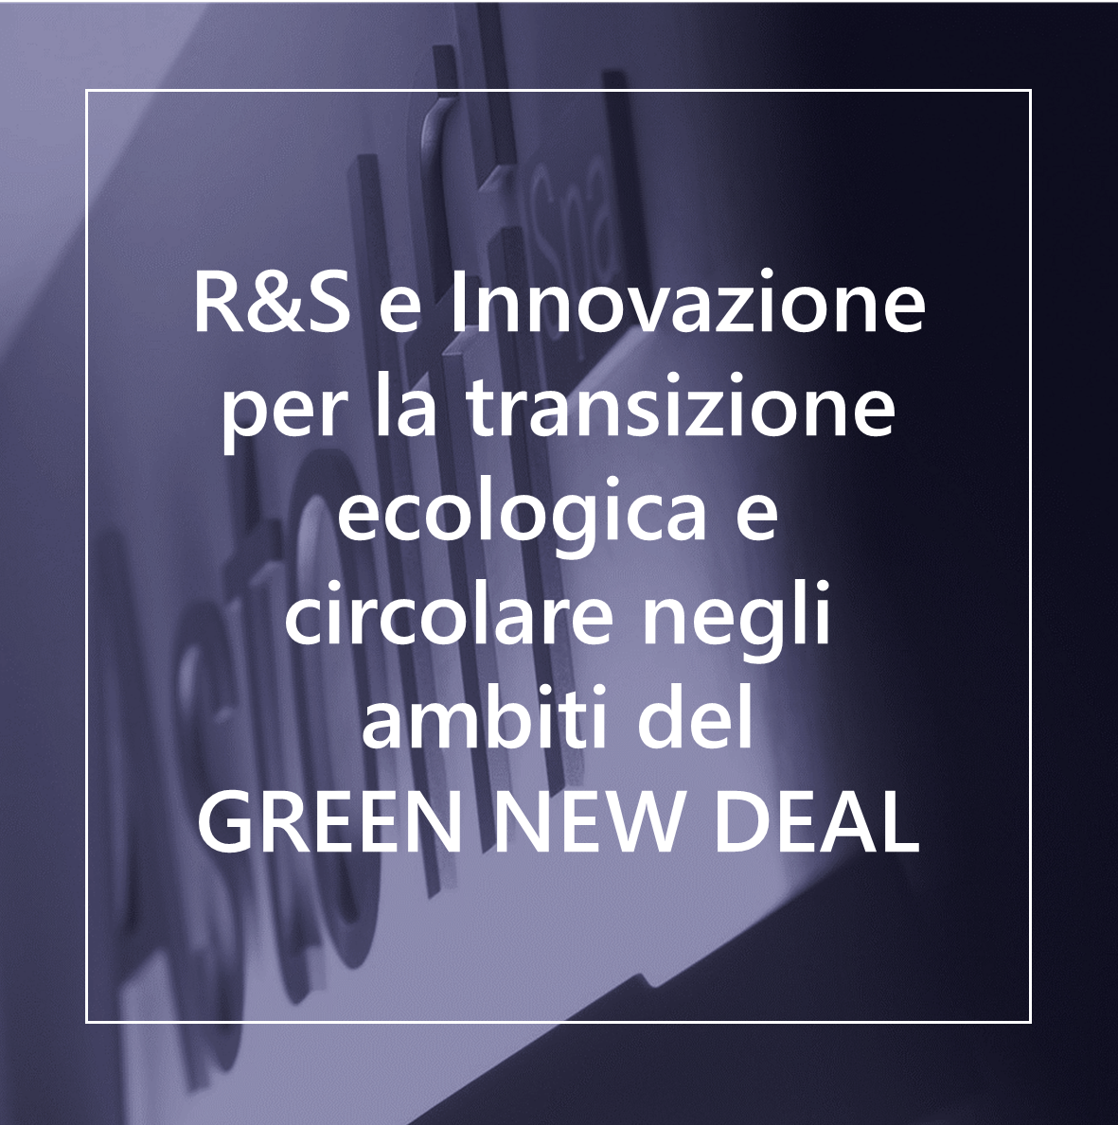 MISE - Ricerca Sviluppo e Innovazione per la transizione ecologica e circolare negli ambiti del Green New Deal Italia